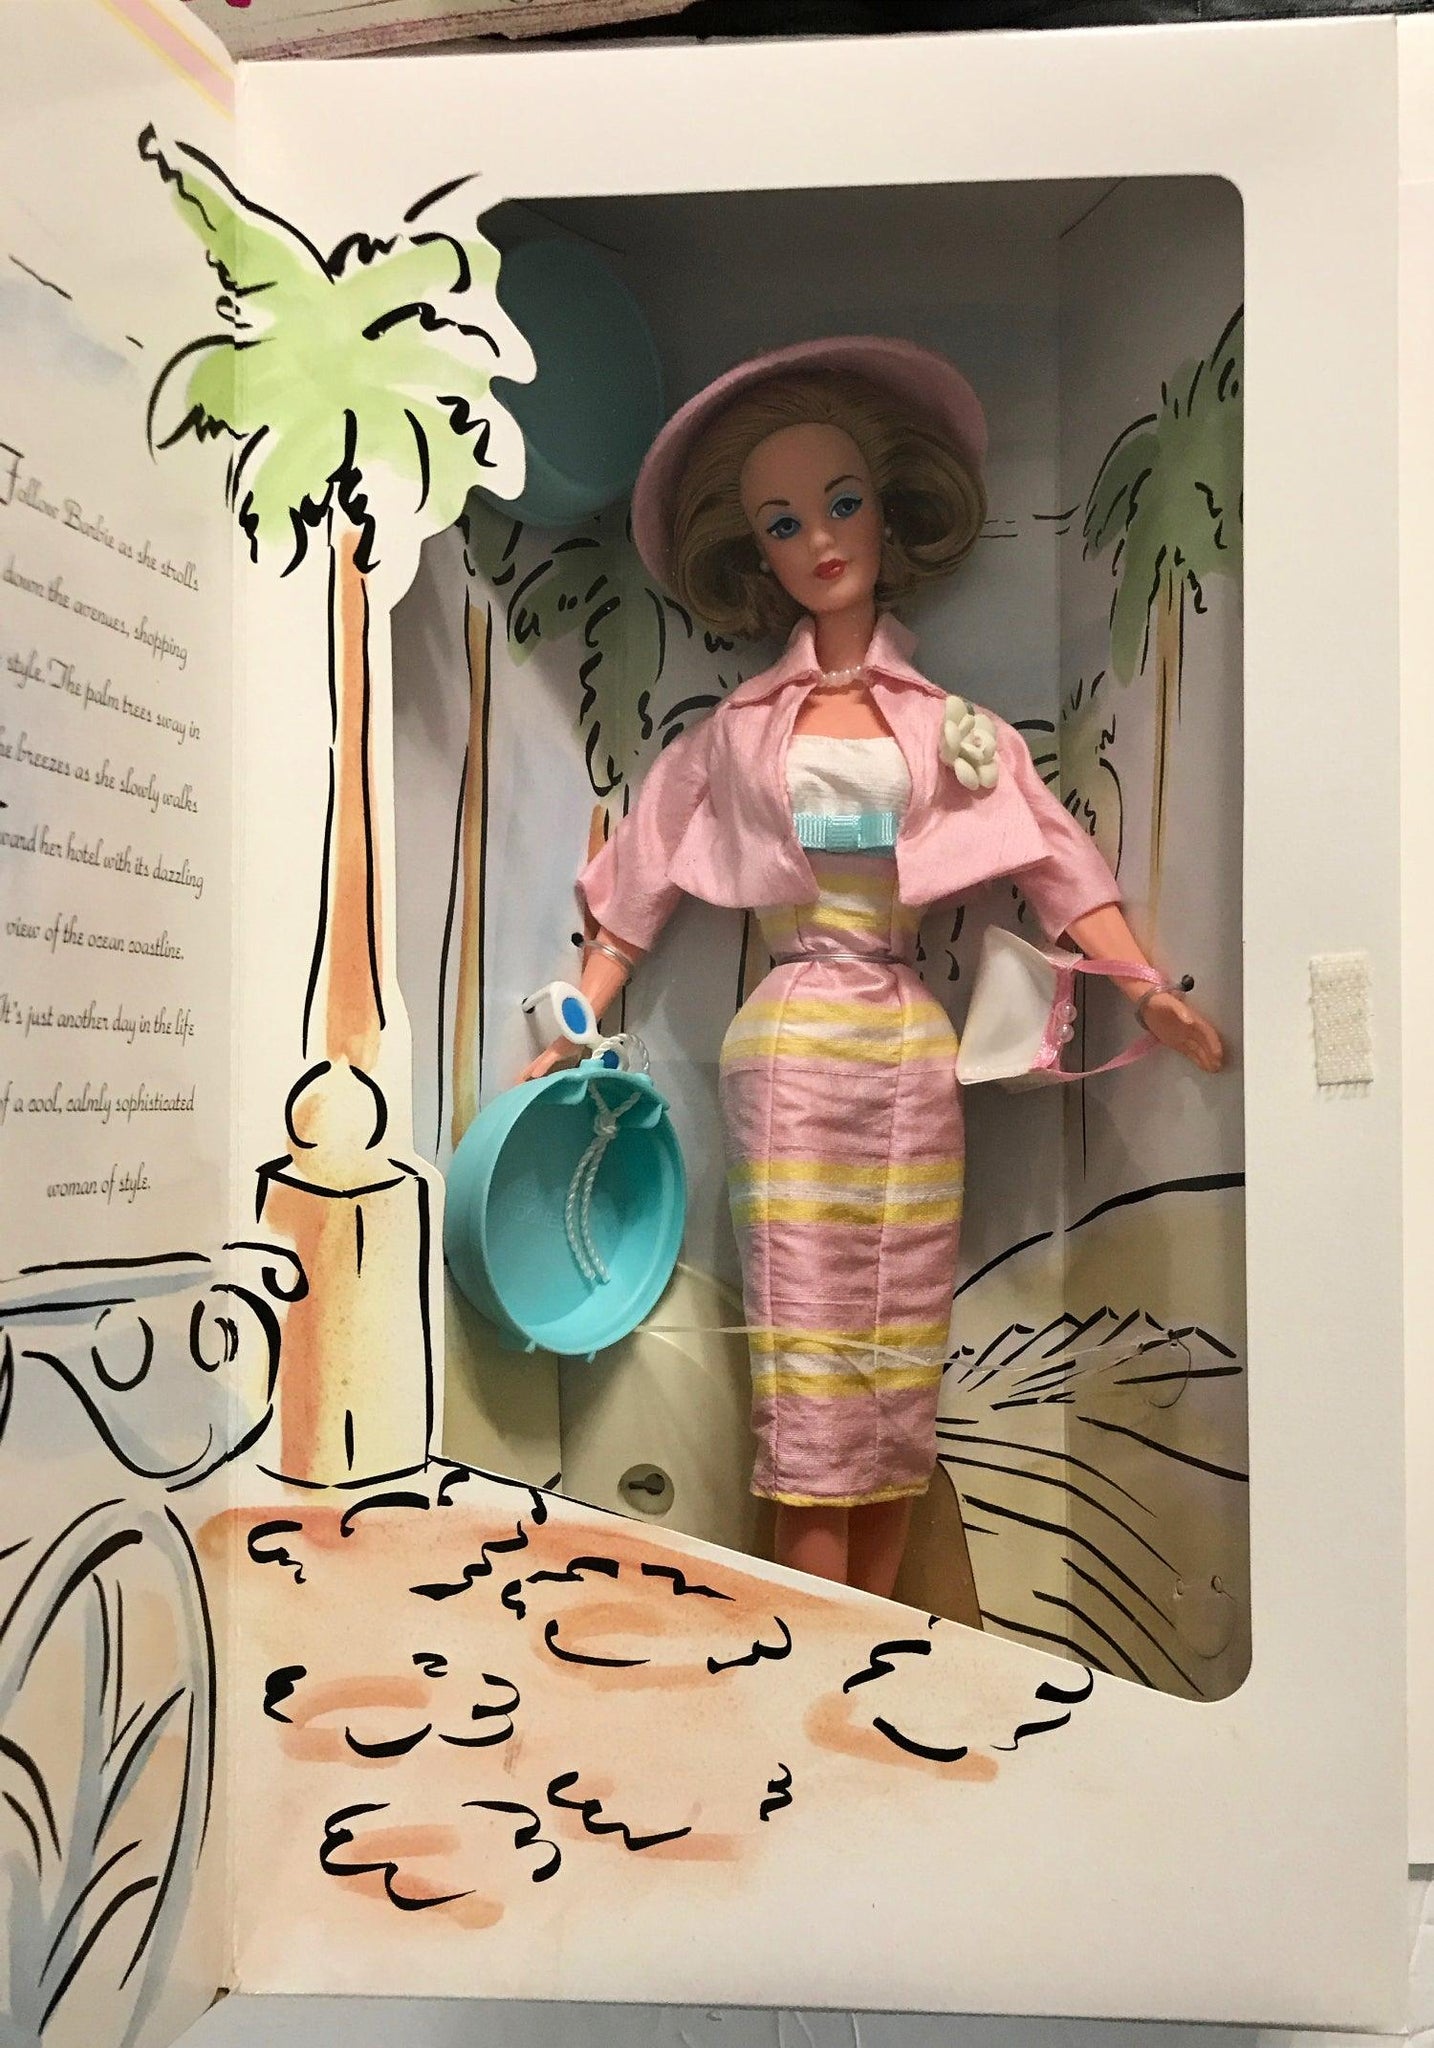 Spiegel Summer Sophisticate Barbie - Limited Edition, NRFB (1995) - Lamoree’s Vintage